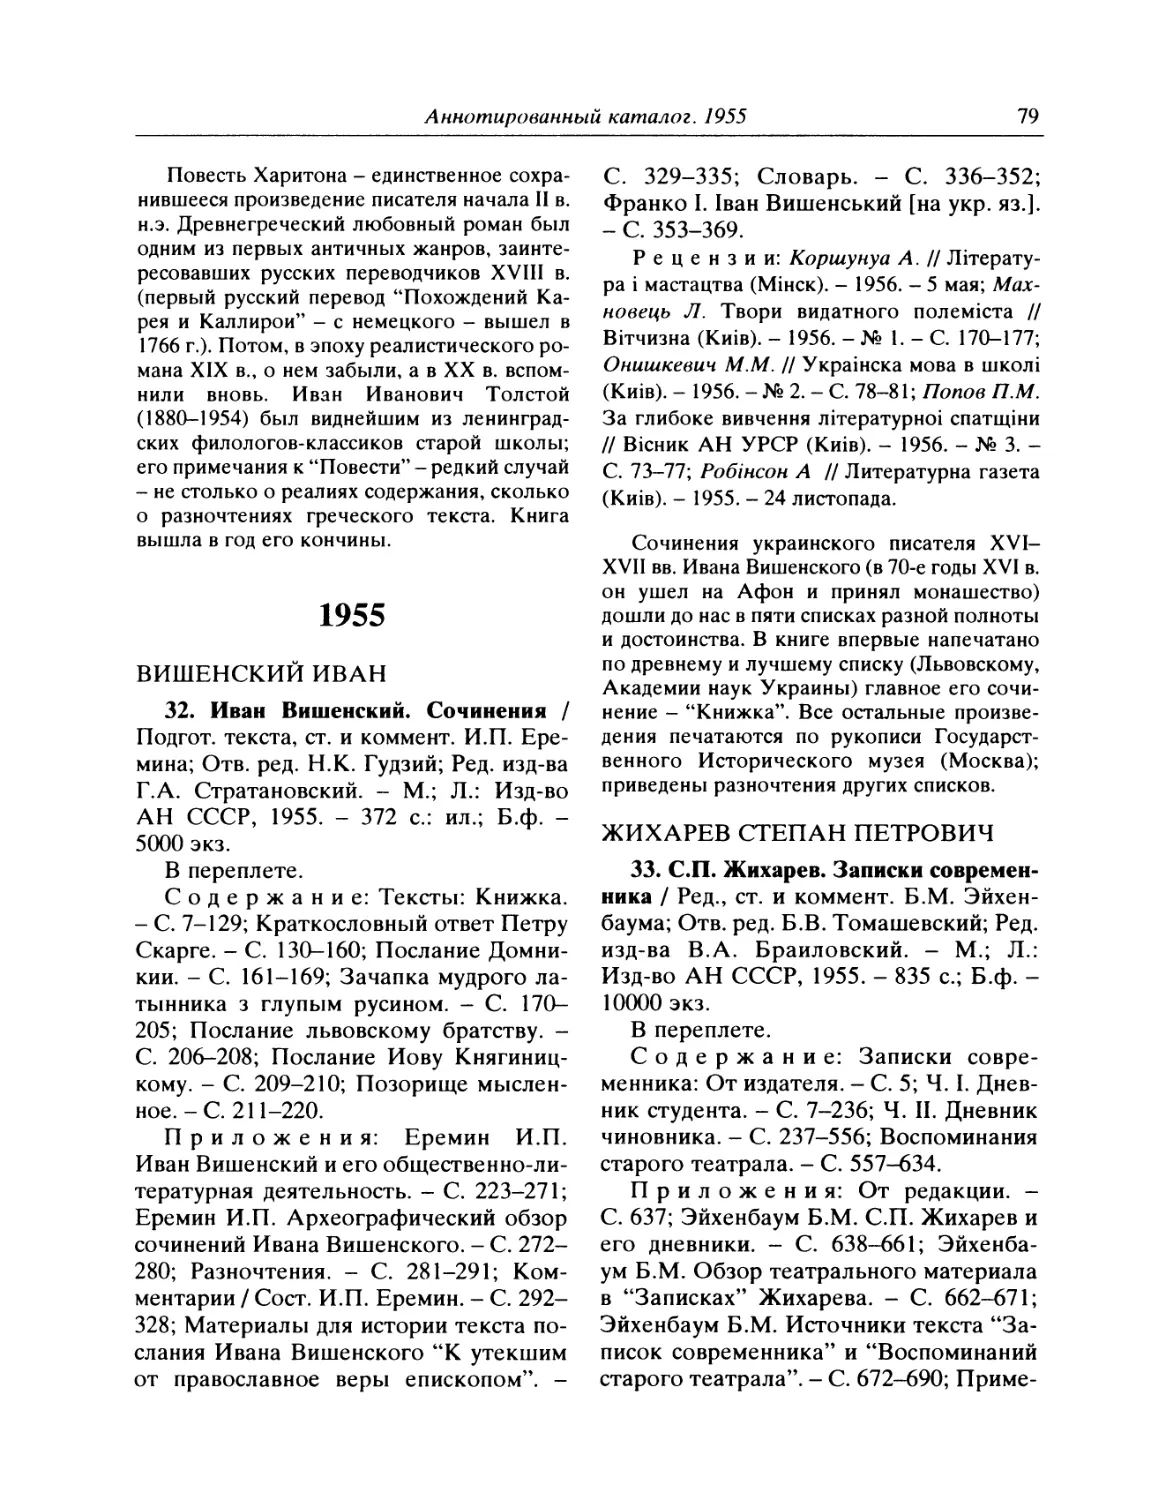 1955
33. С.П. Жихарев. Записки современника